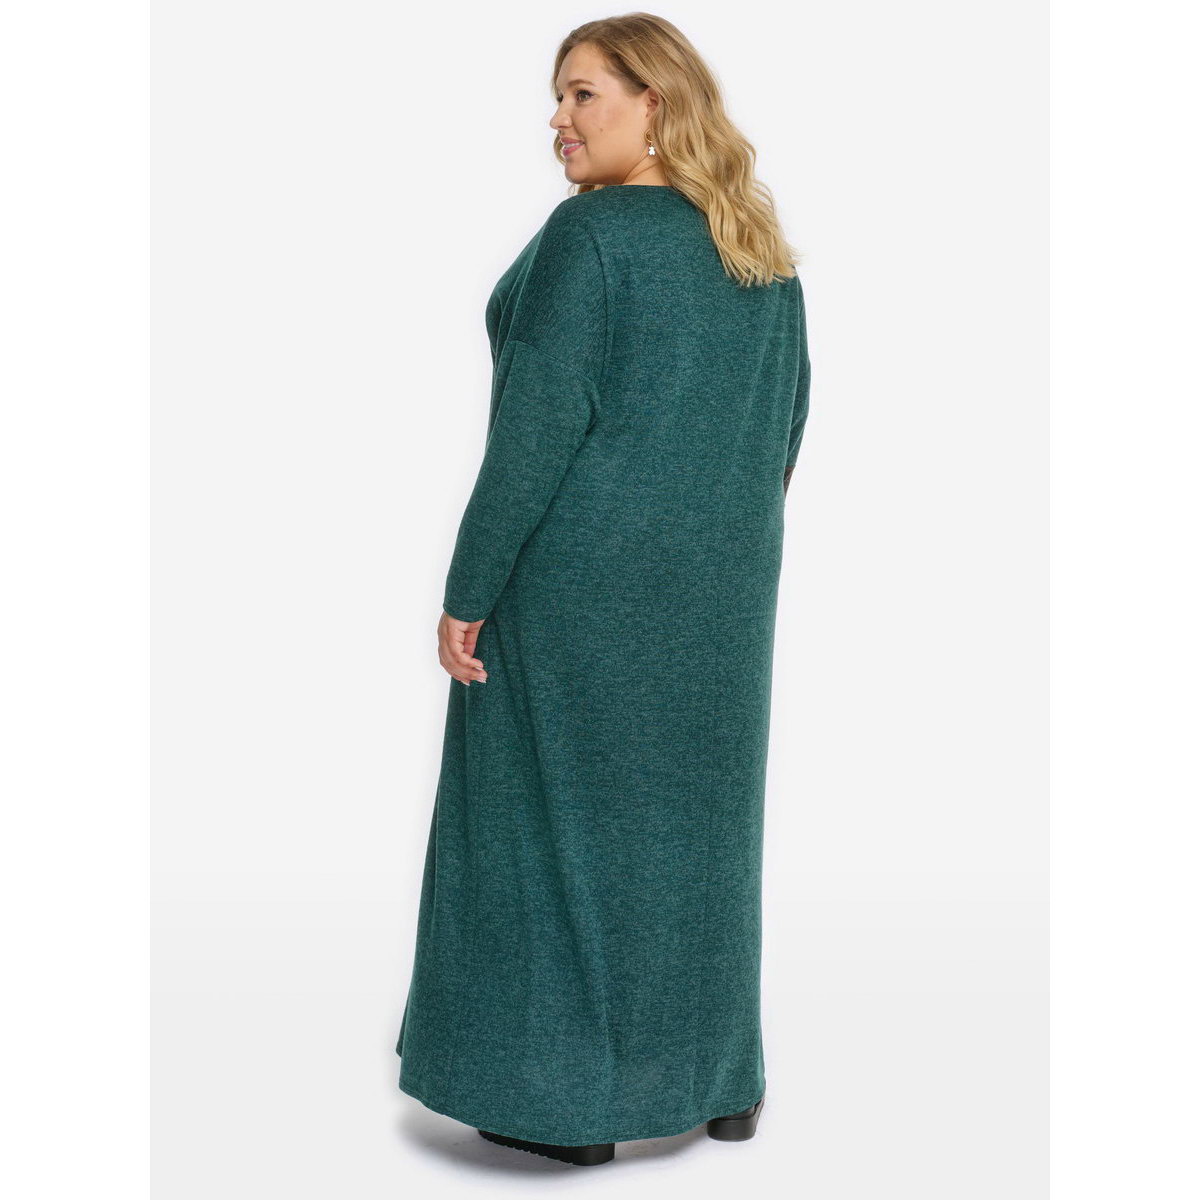 Платье из джерси-меланж с асимметричной отделкой, зеленое